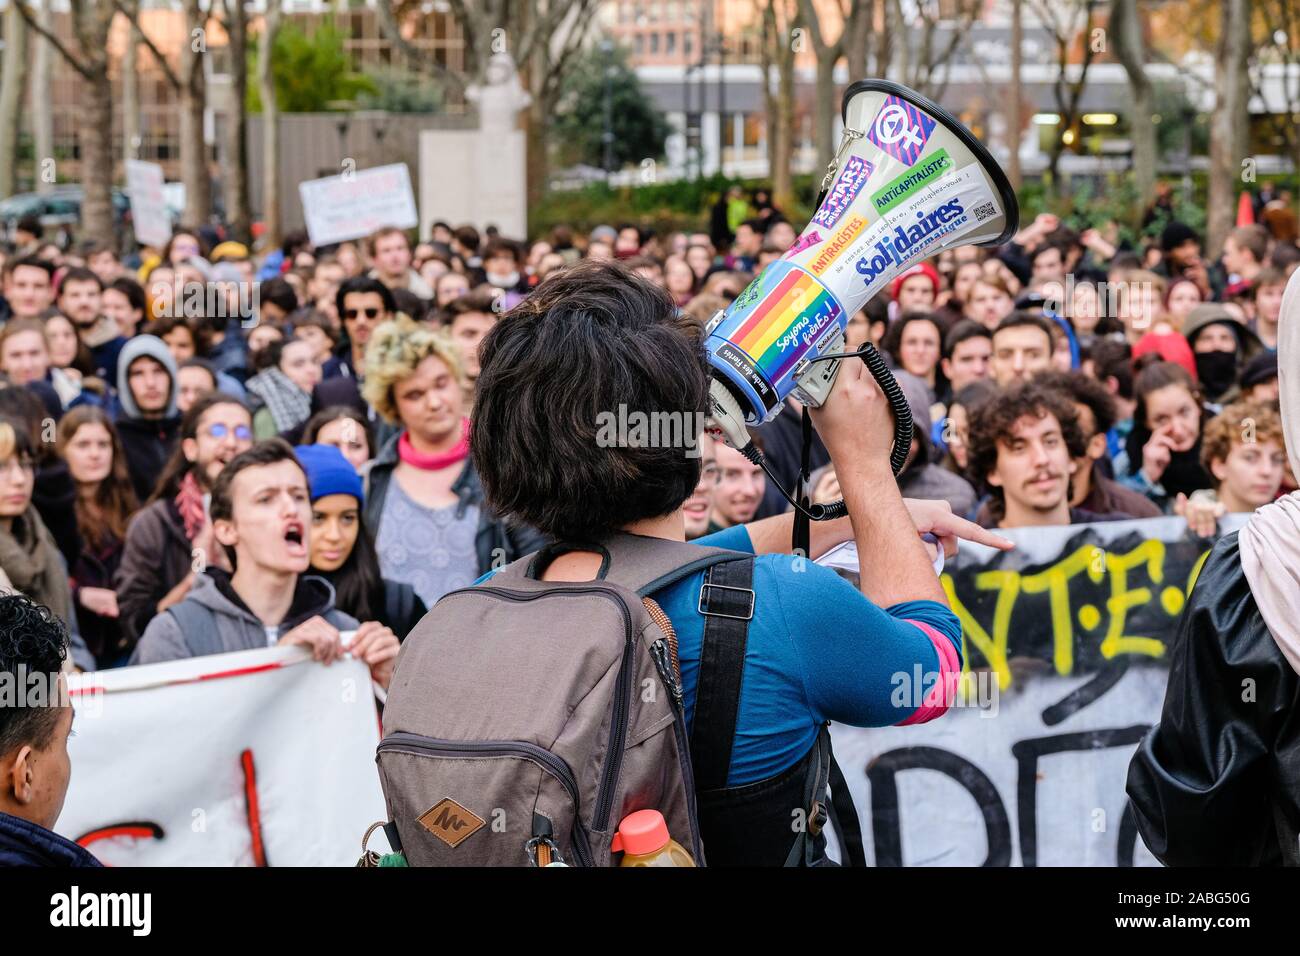 Am 26. November 2019, Lyon, Auvergne-Rh ône-Alpes, Frankreich, Demonstration der Schüler. Ein Schüler mit einem Megaphon vor den Demonstranten Stockfoto